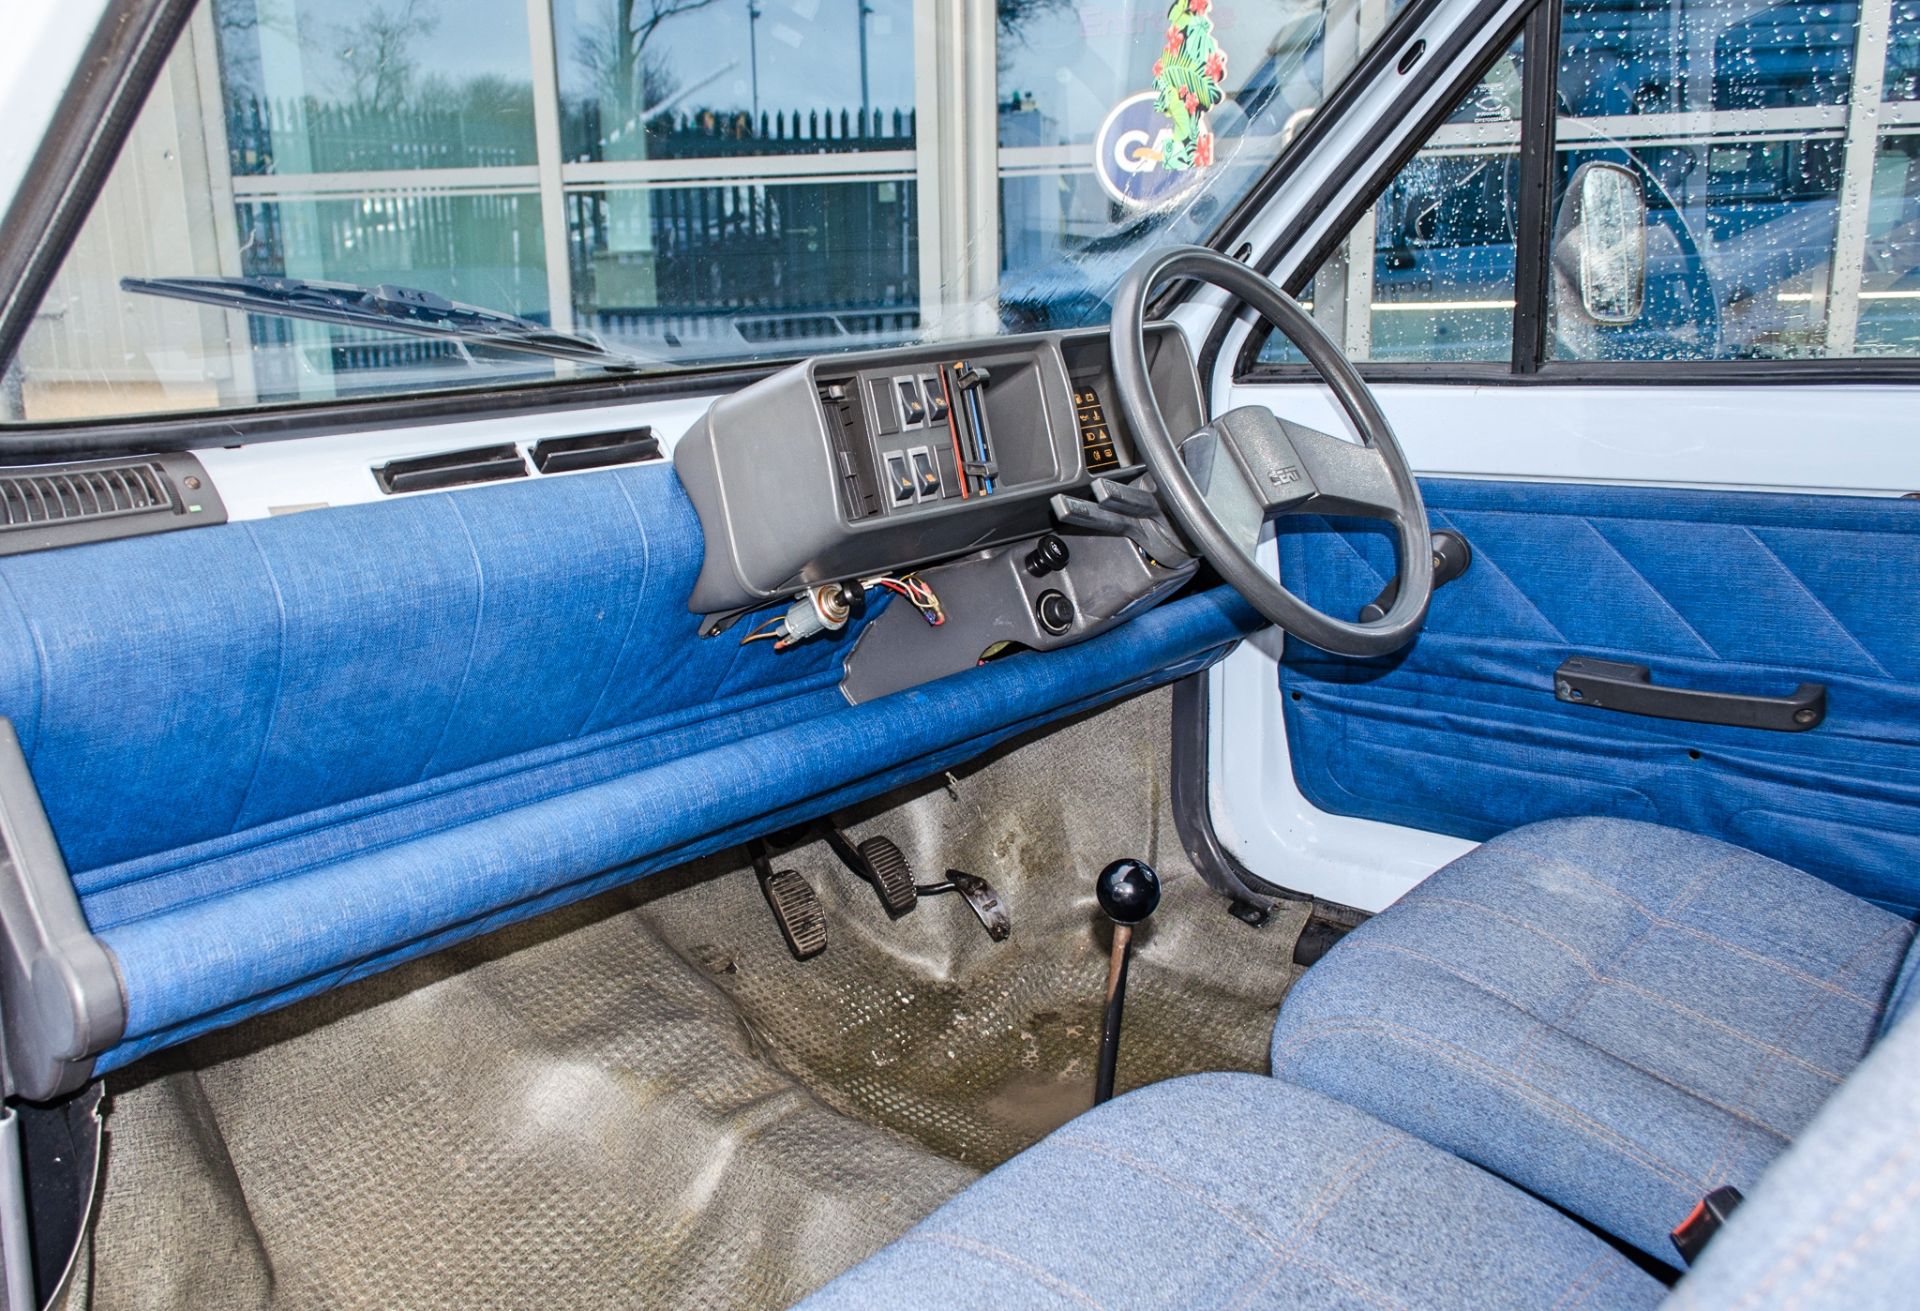 1990 Seat Terra 903cc 2 berth Danbury Motor Caravan - Image 35 of 53